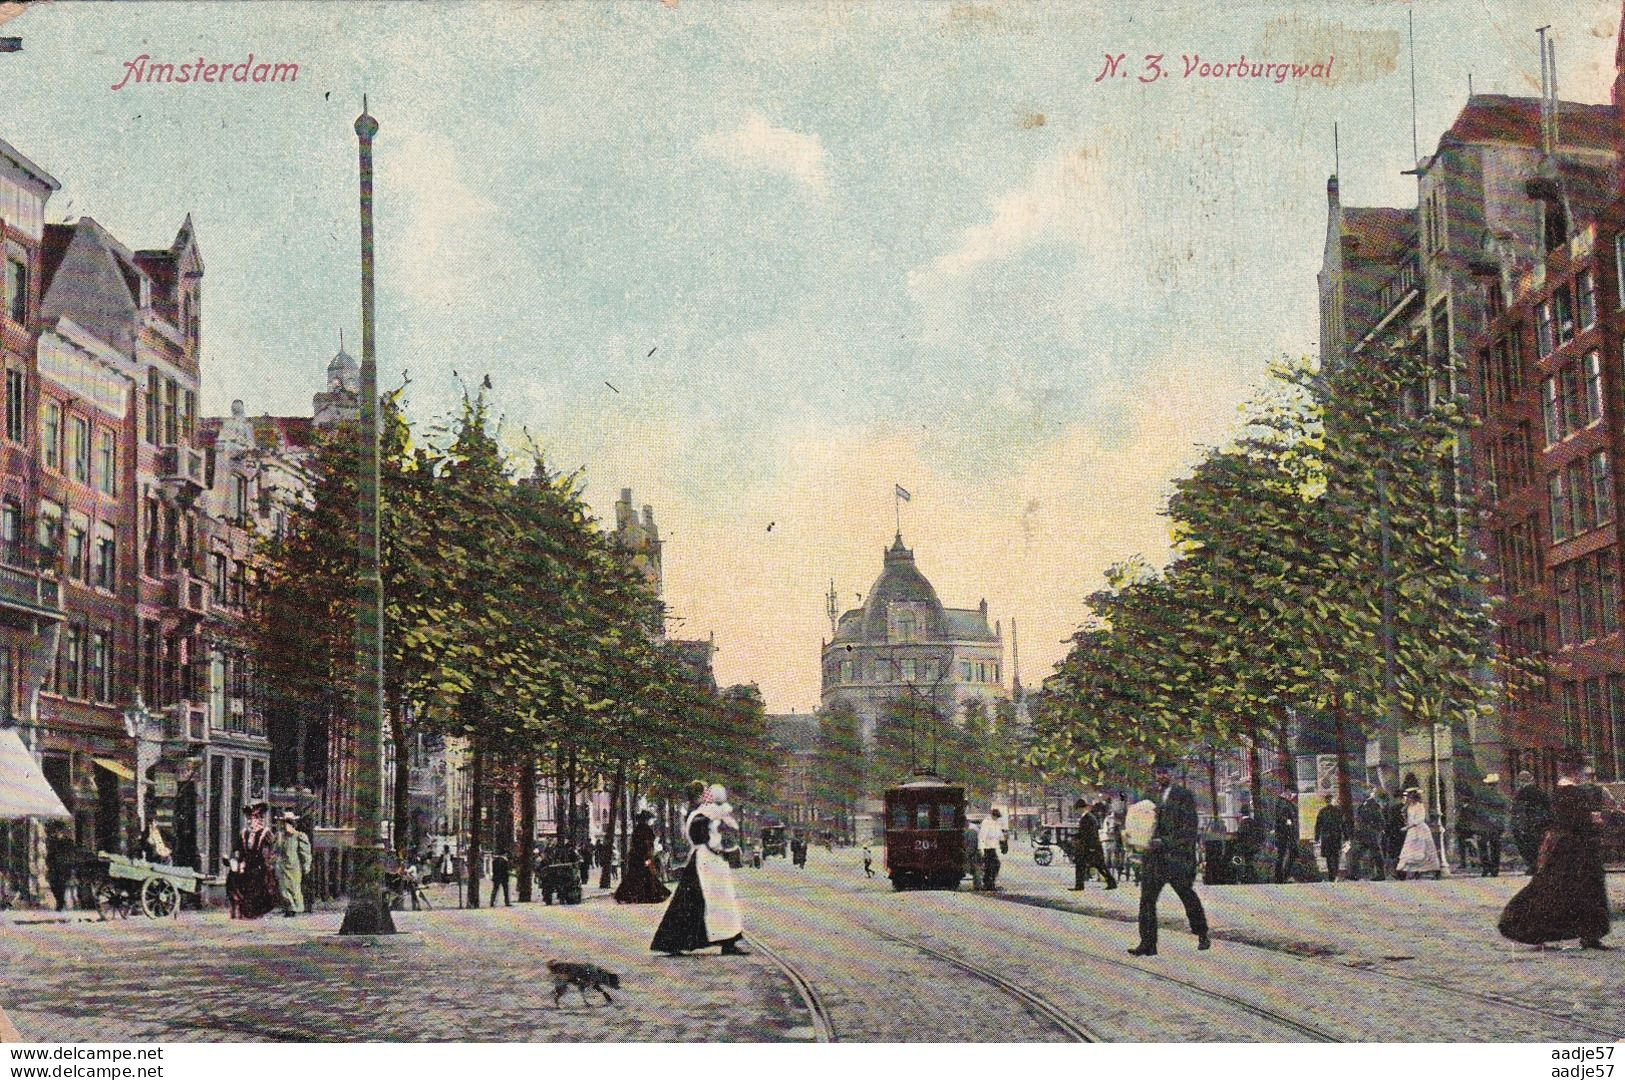 Netherlands Pays Bas Amsterdam N.Z. Voorburgwal Tram 1909 - Tram